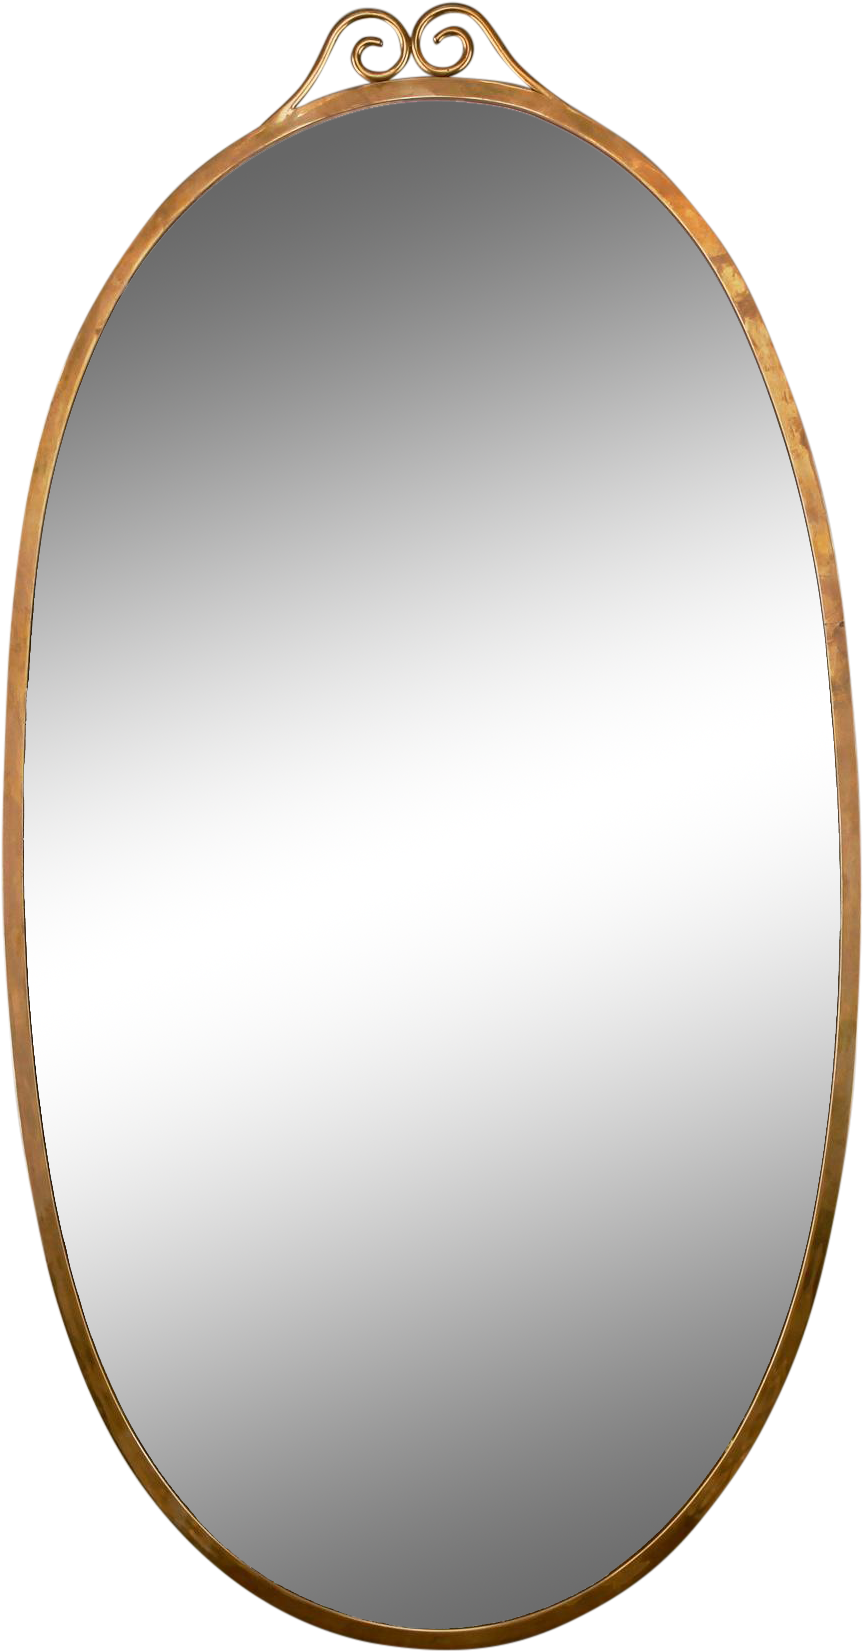 Elegant Oval Mirror Design PNG image